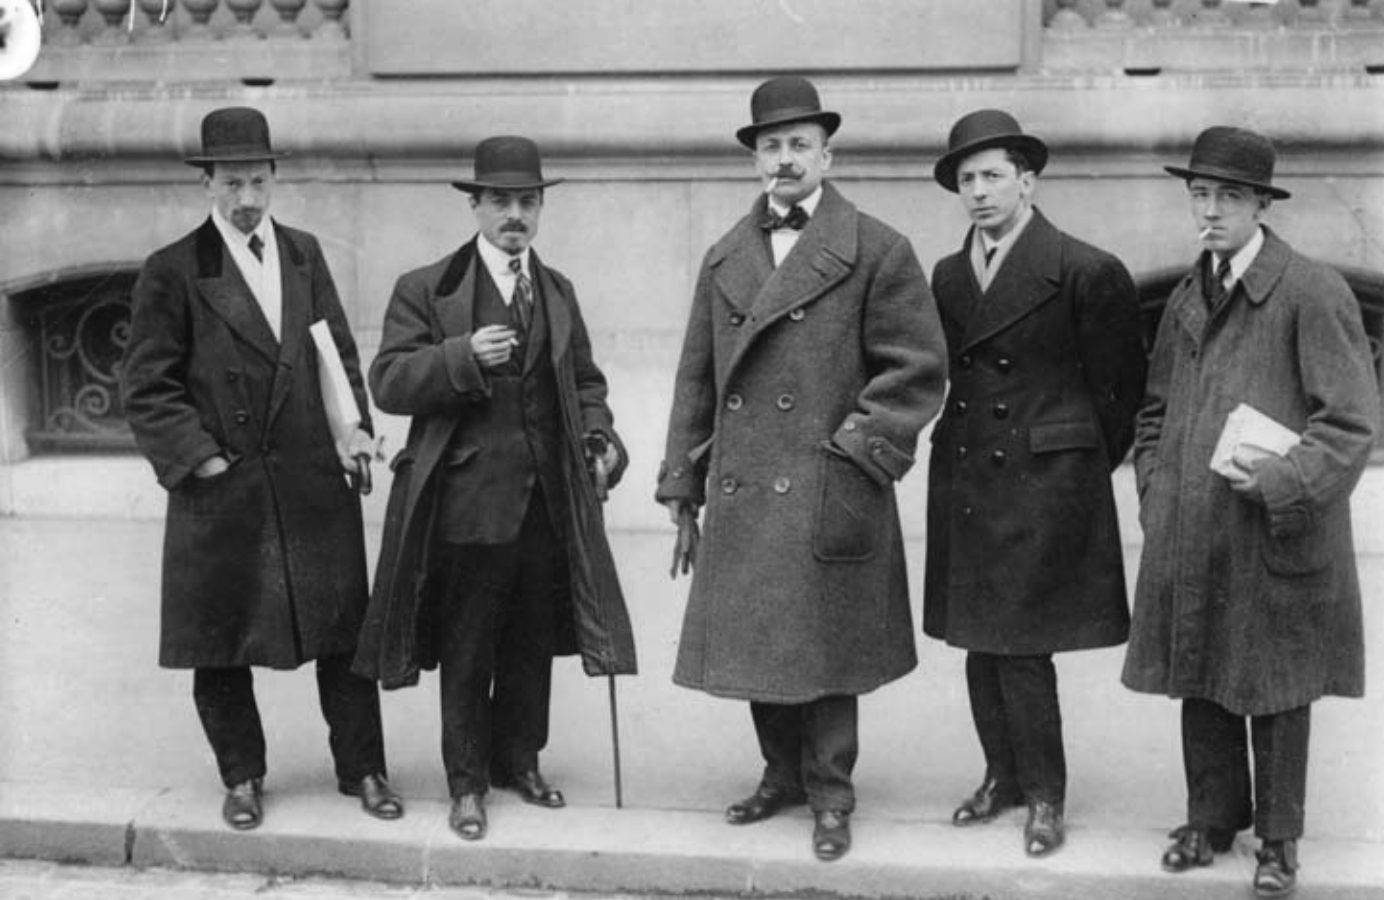 Futurists Luigi Russolo, Carlo Carrà, Filippo Tommaso Marinetti, Umberto Boccioni and Gino Severini in front of Le Figaro, Paris, February 9, 1912